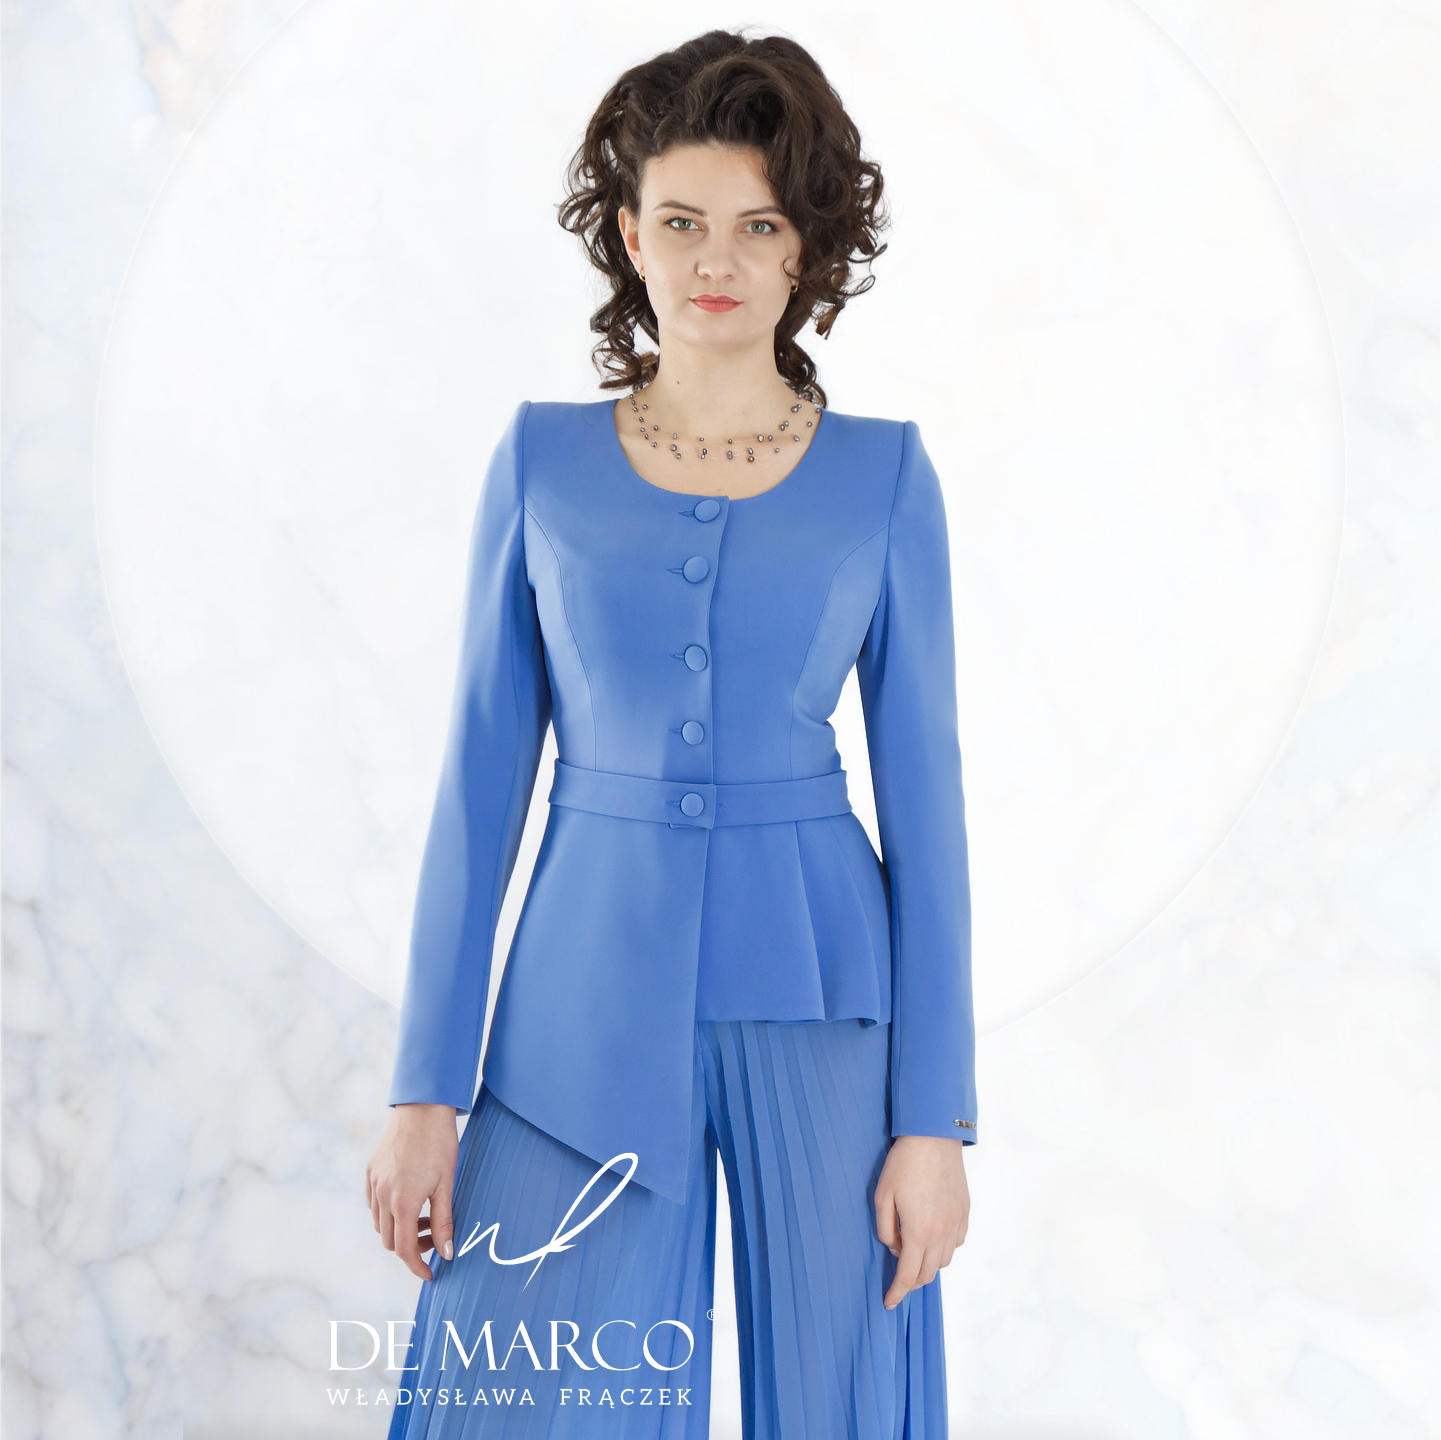 Unikatowe garnitury damskie De Marco: Doskonałe na wesele, komunię i więcej